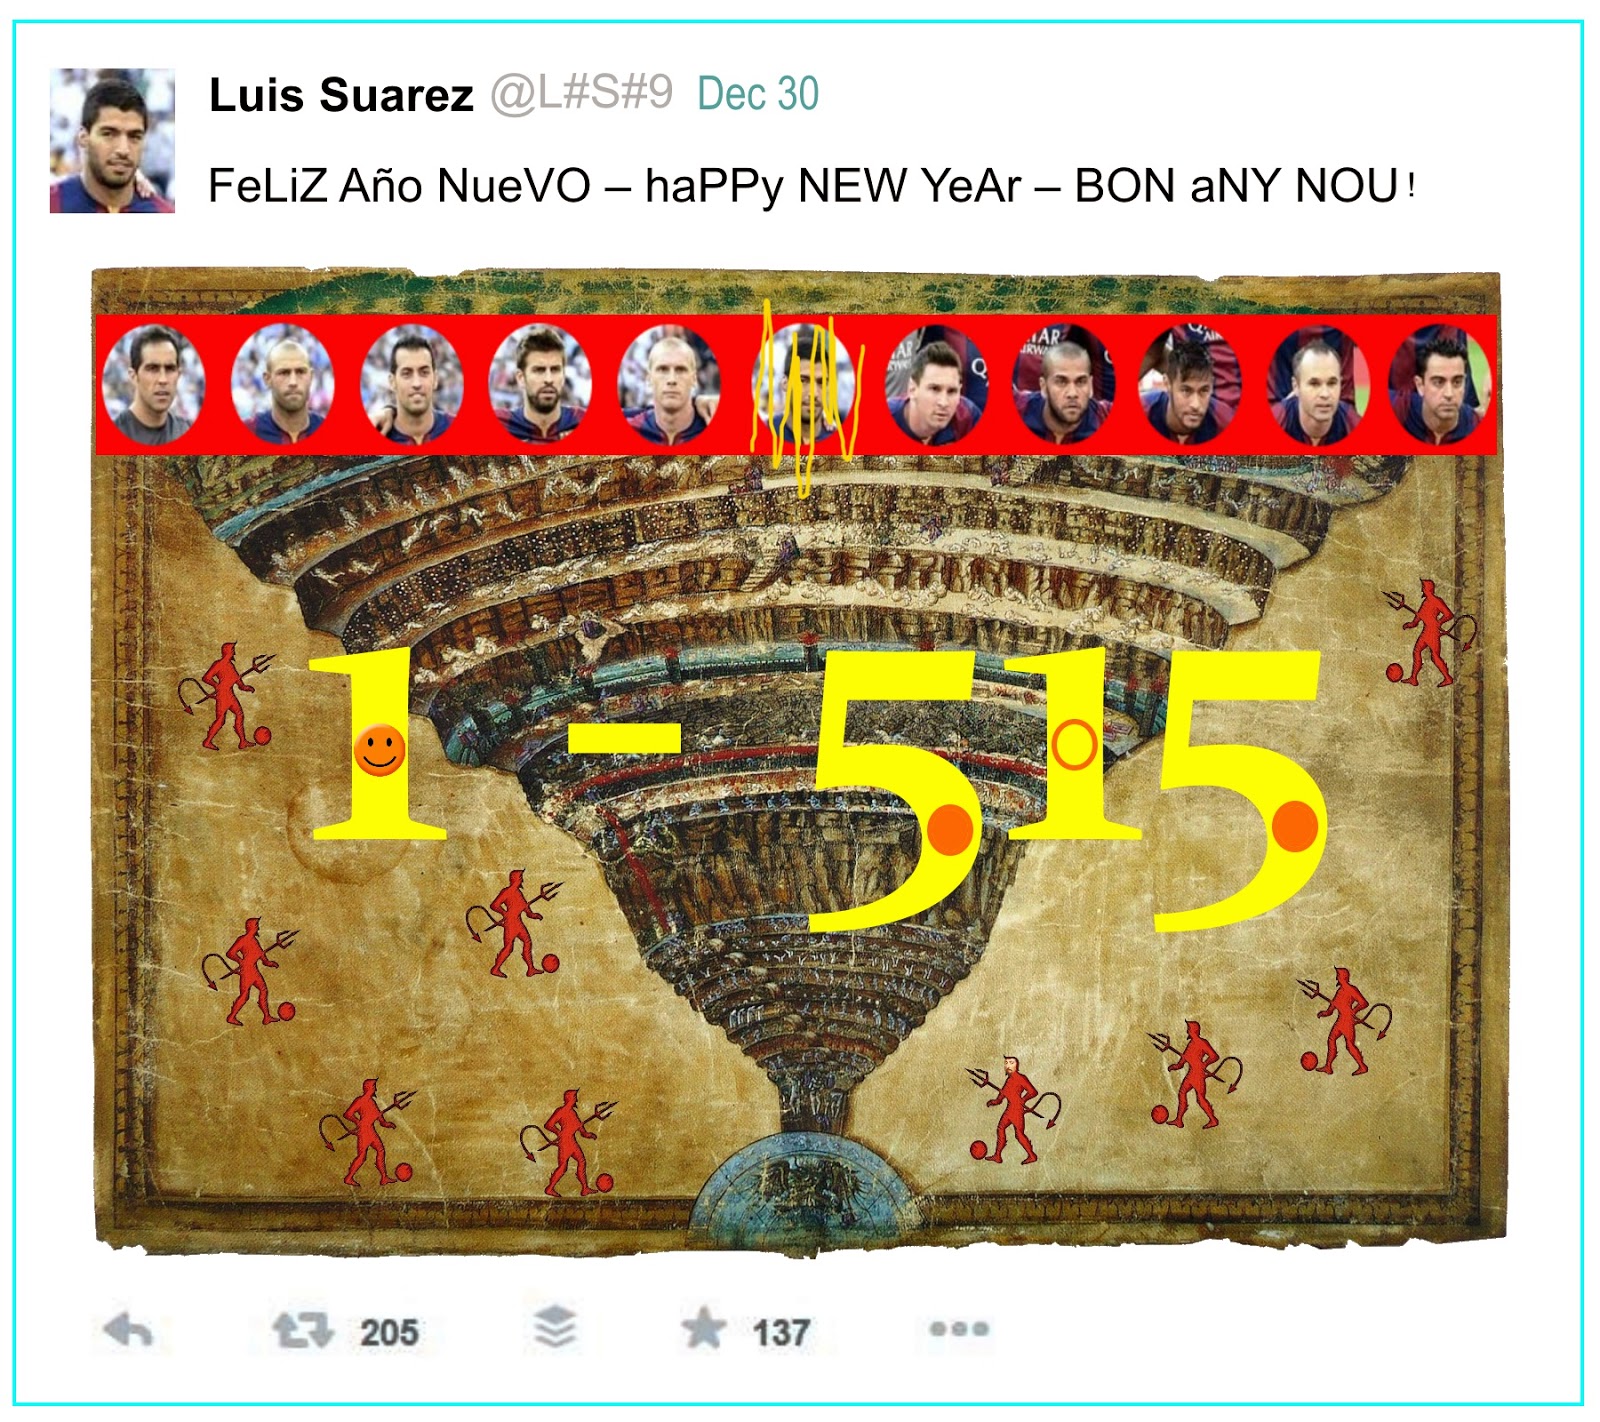 Felicitación del nuevo año 2015 de Luis Suárez.